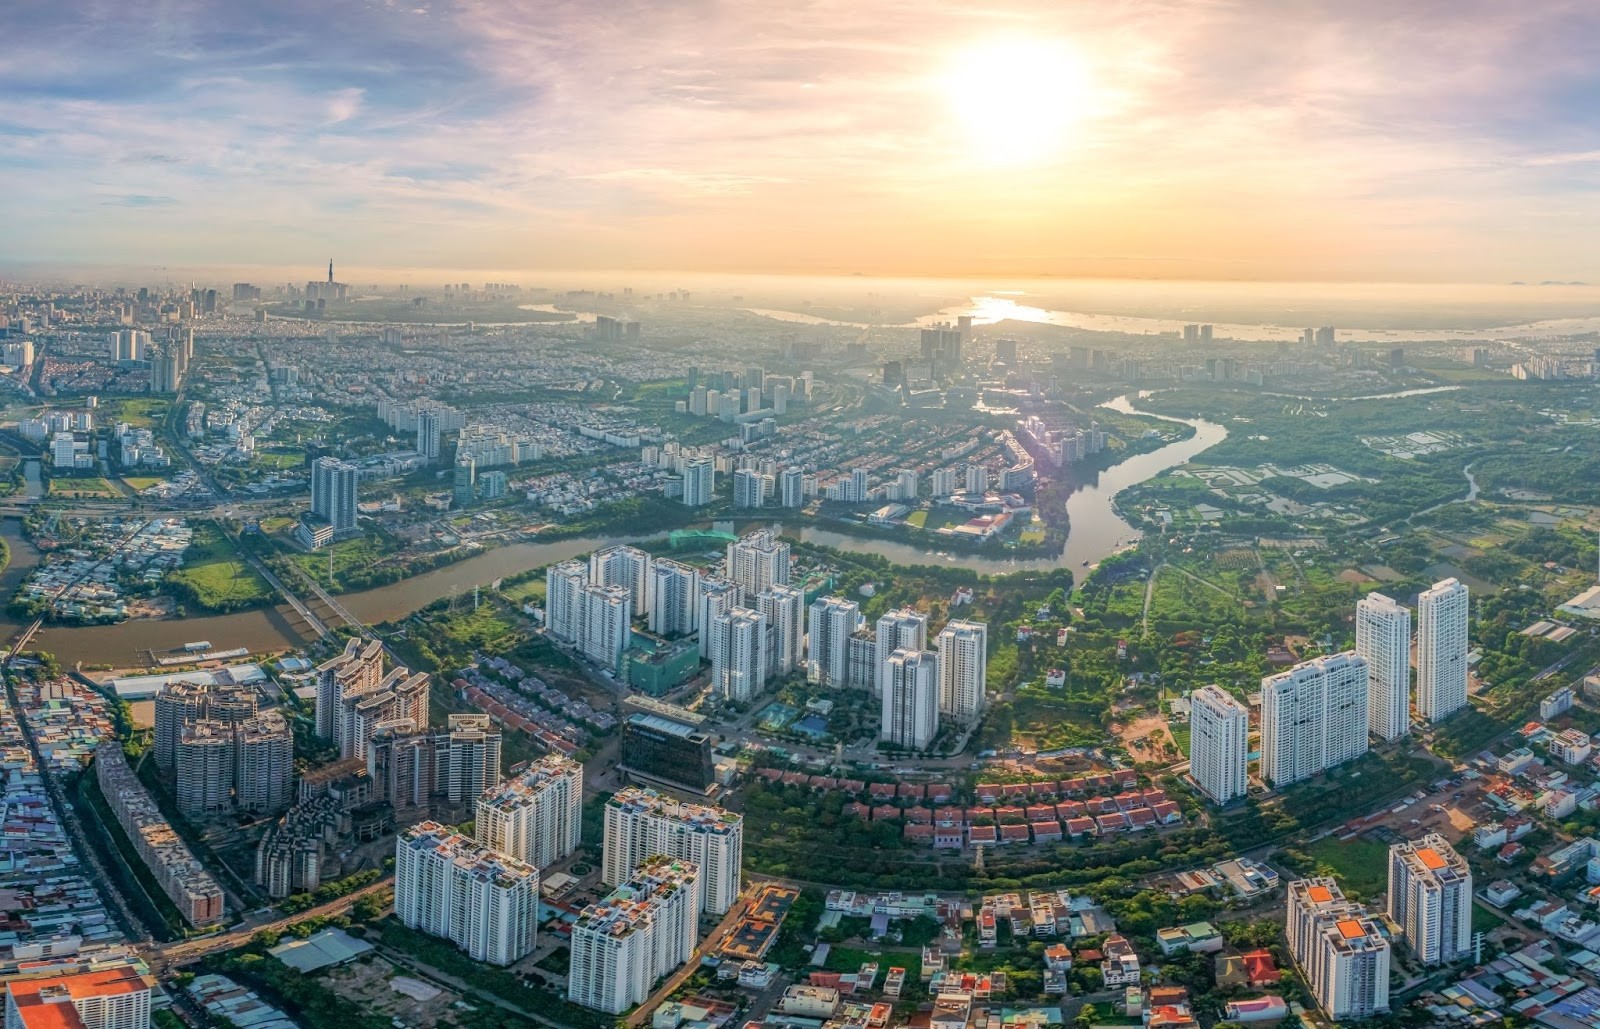 
Trong quý I/2023, có 4/9 ngành dịch vụ trọng yếu của TP Hồ Chí Minh ghi nhận mức tăng trưởng âm so với cùng kỳ năm 2022.
